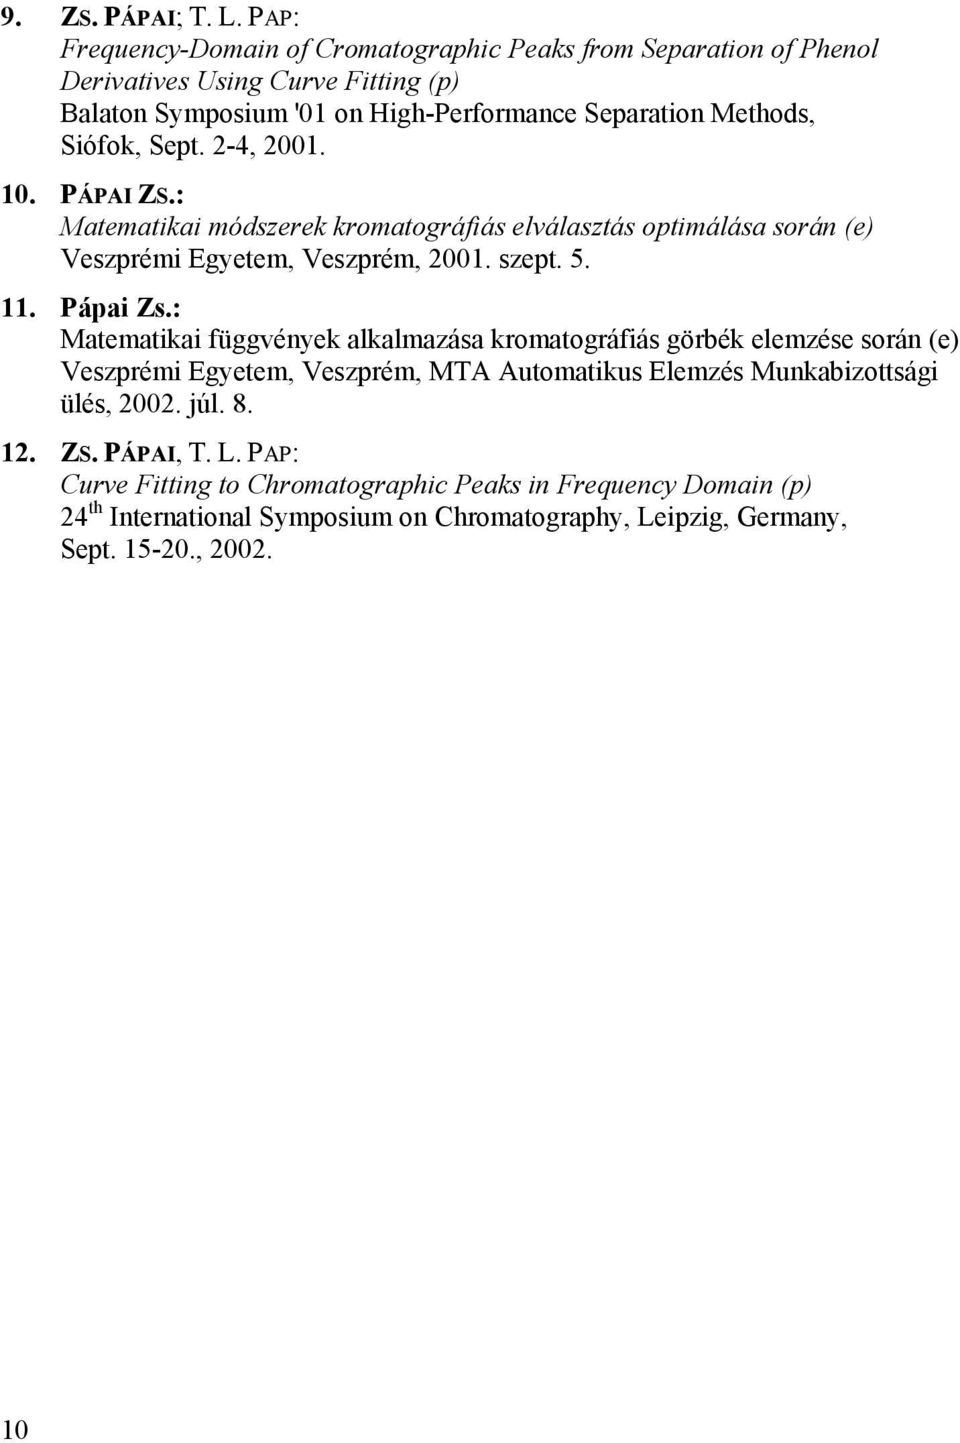 Siófok, Sept. 2-4, 2001. 10. PÁPAI ZS.: Matematikai módszerek kromatográfiás elválasztás optimálása során (e) Veszprémi Egyetem, Veszprém, 2001. szept. 5. 11. Pápai Zs.